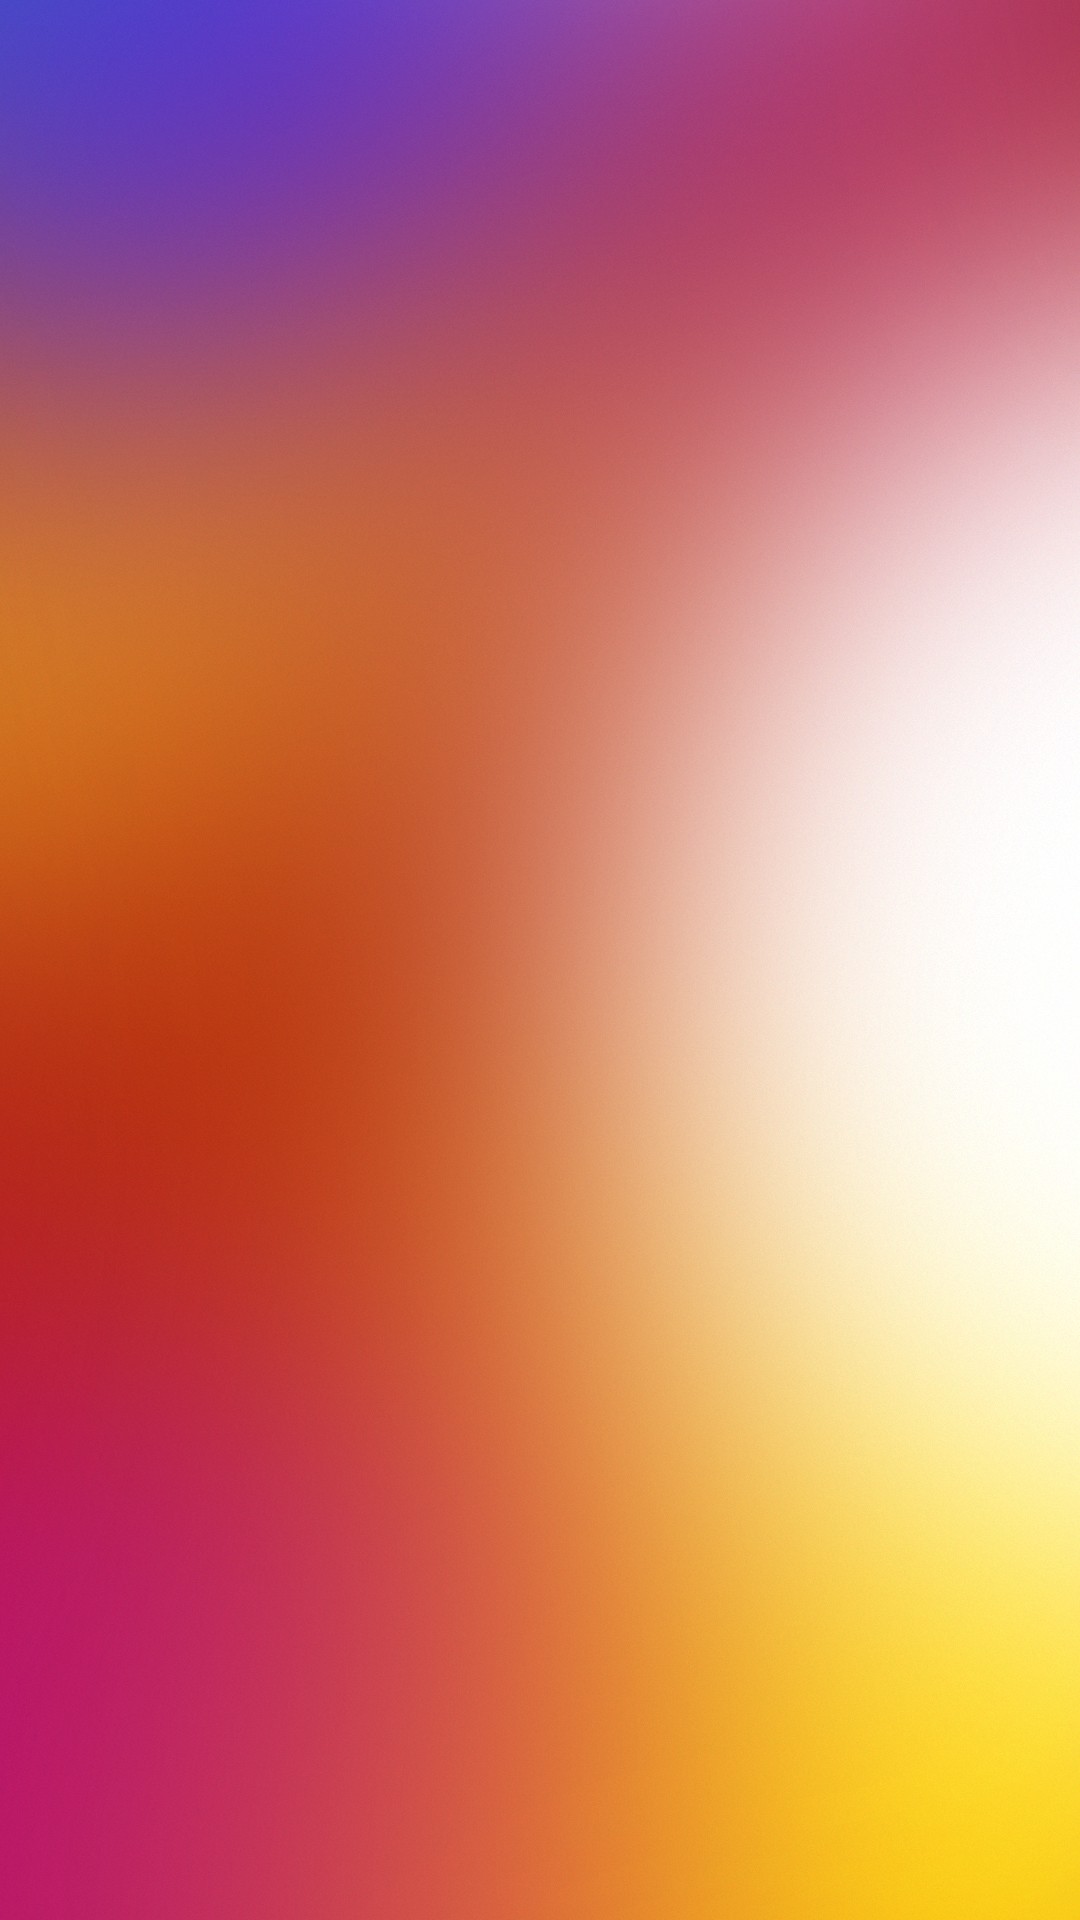 lenovo k5 note wallpaper hd,cielo,arancia,rosa,rosso,giallo